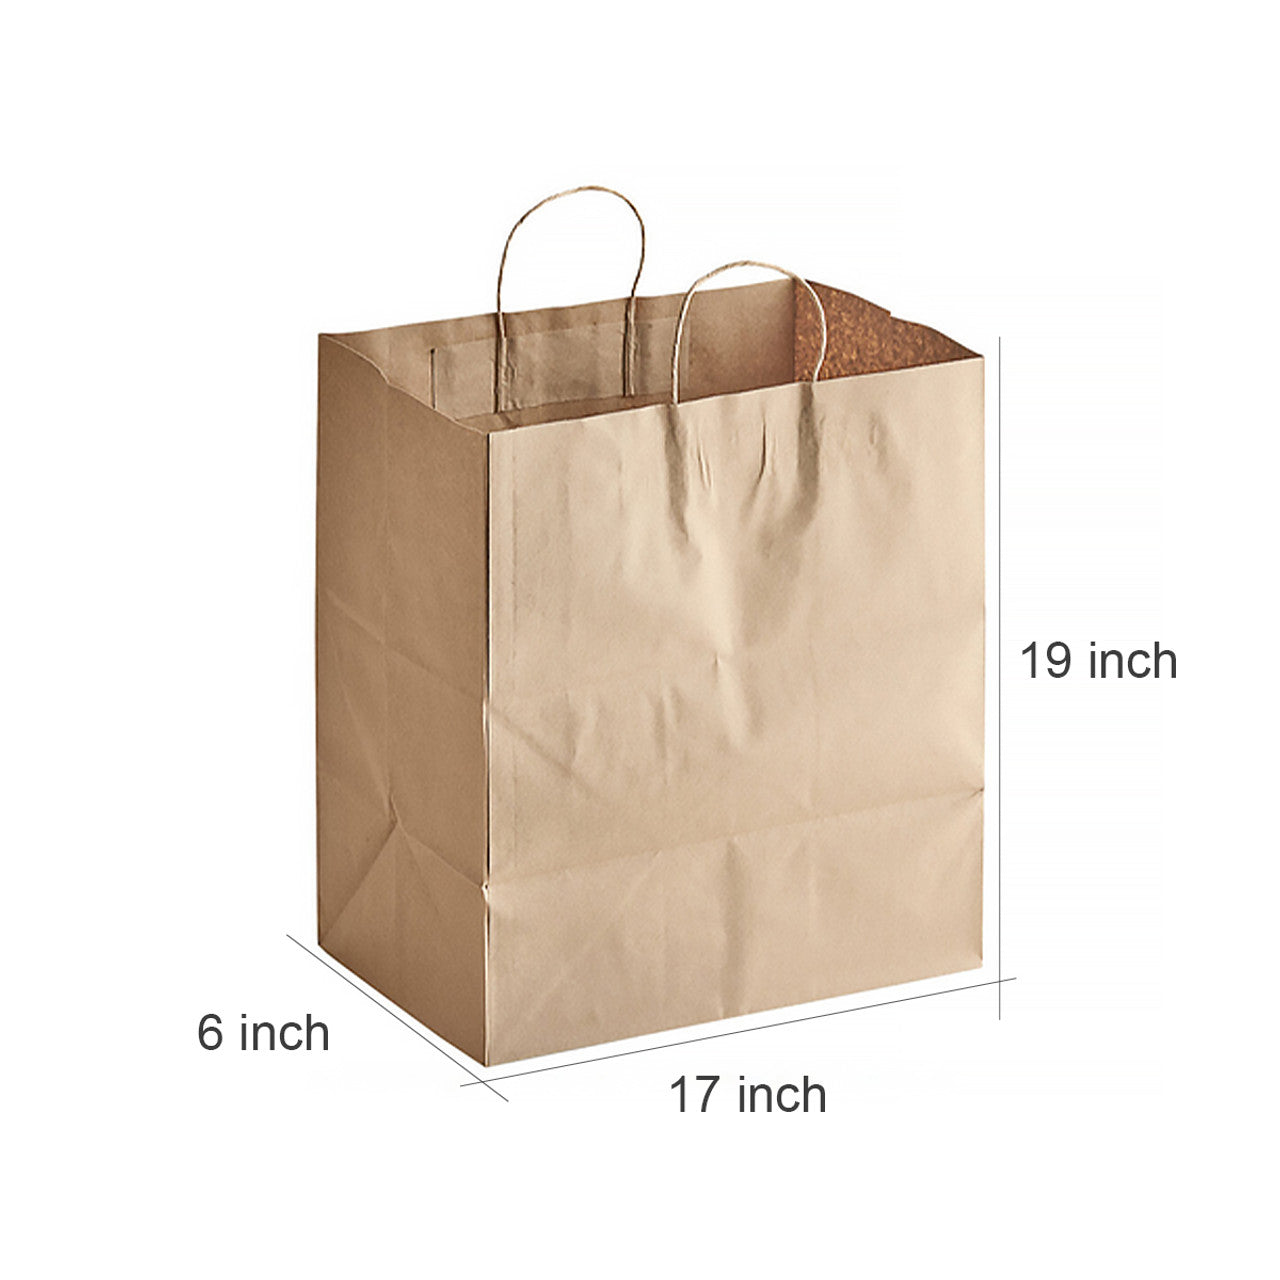 Sample Jumbo Handle Kraft Paper Bag